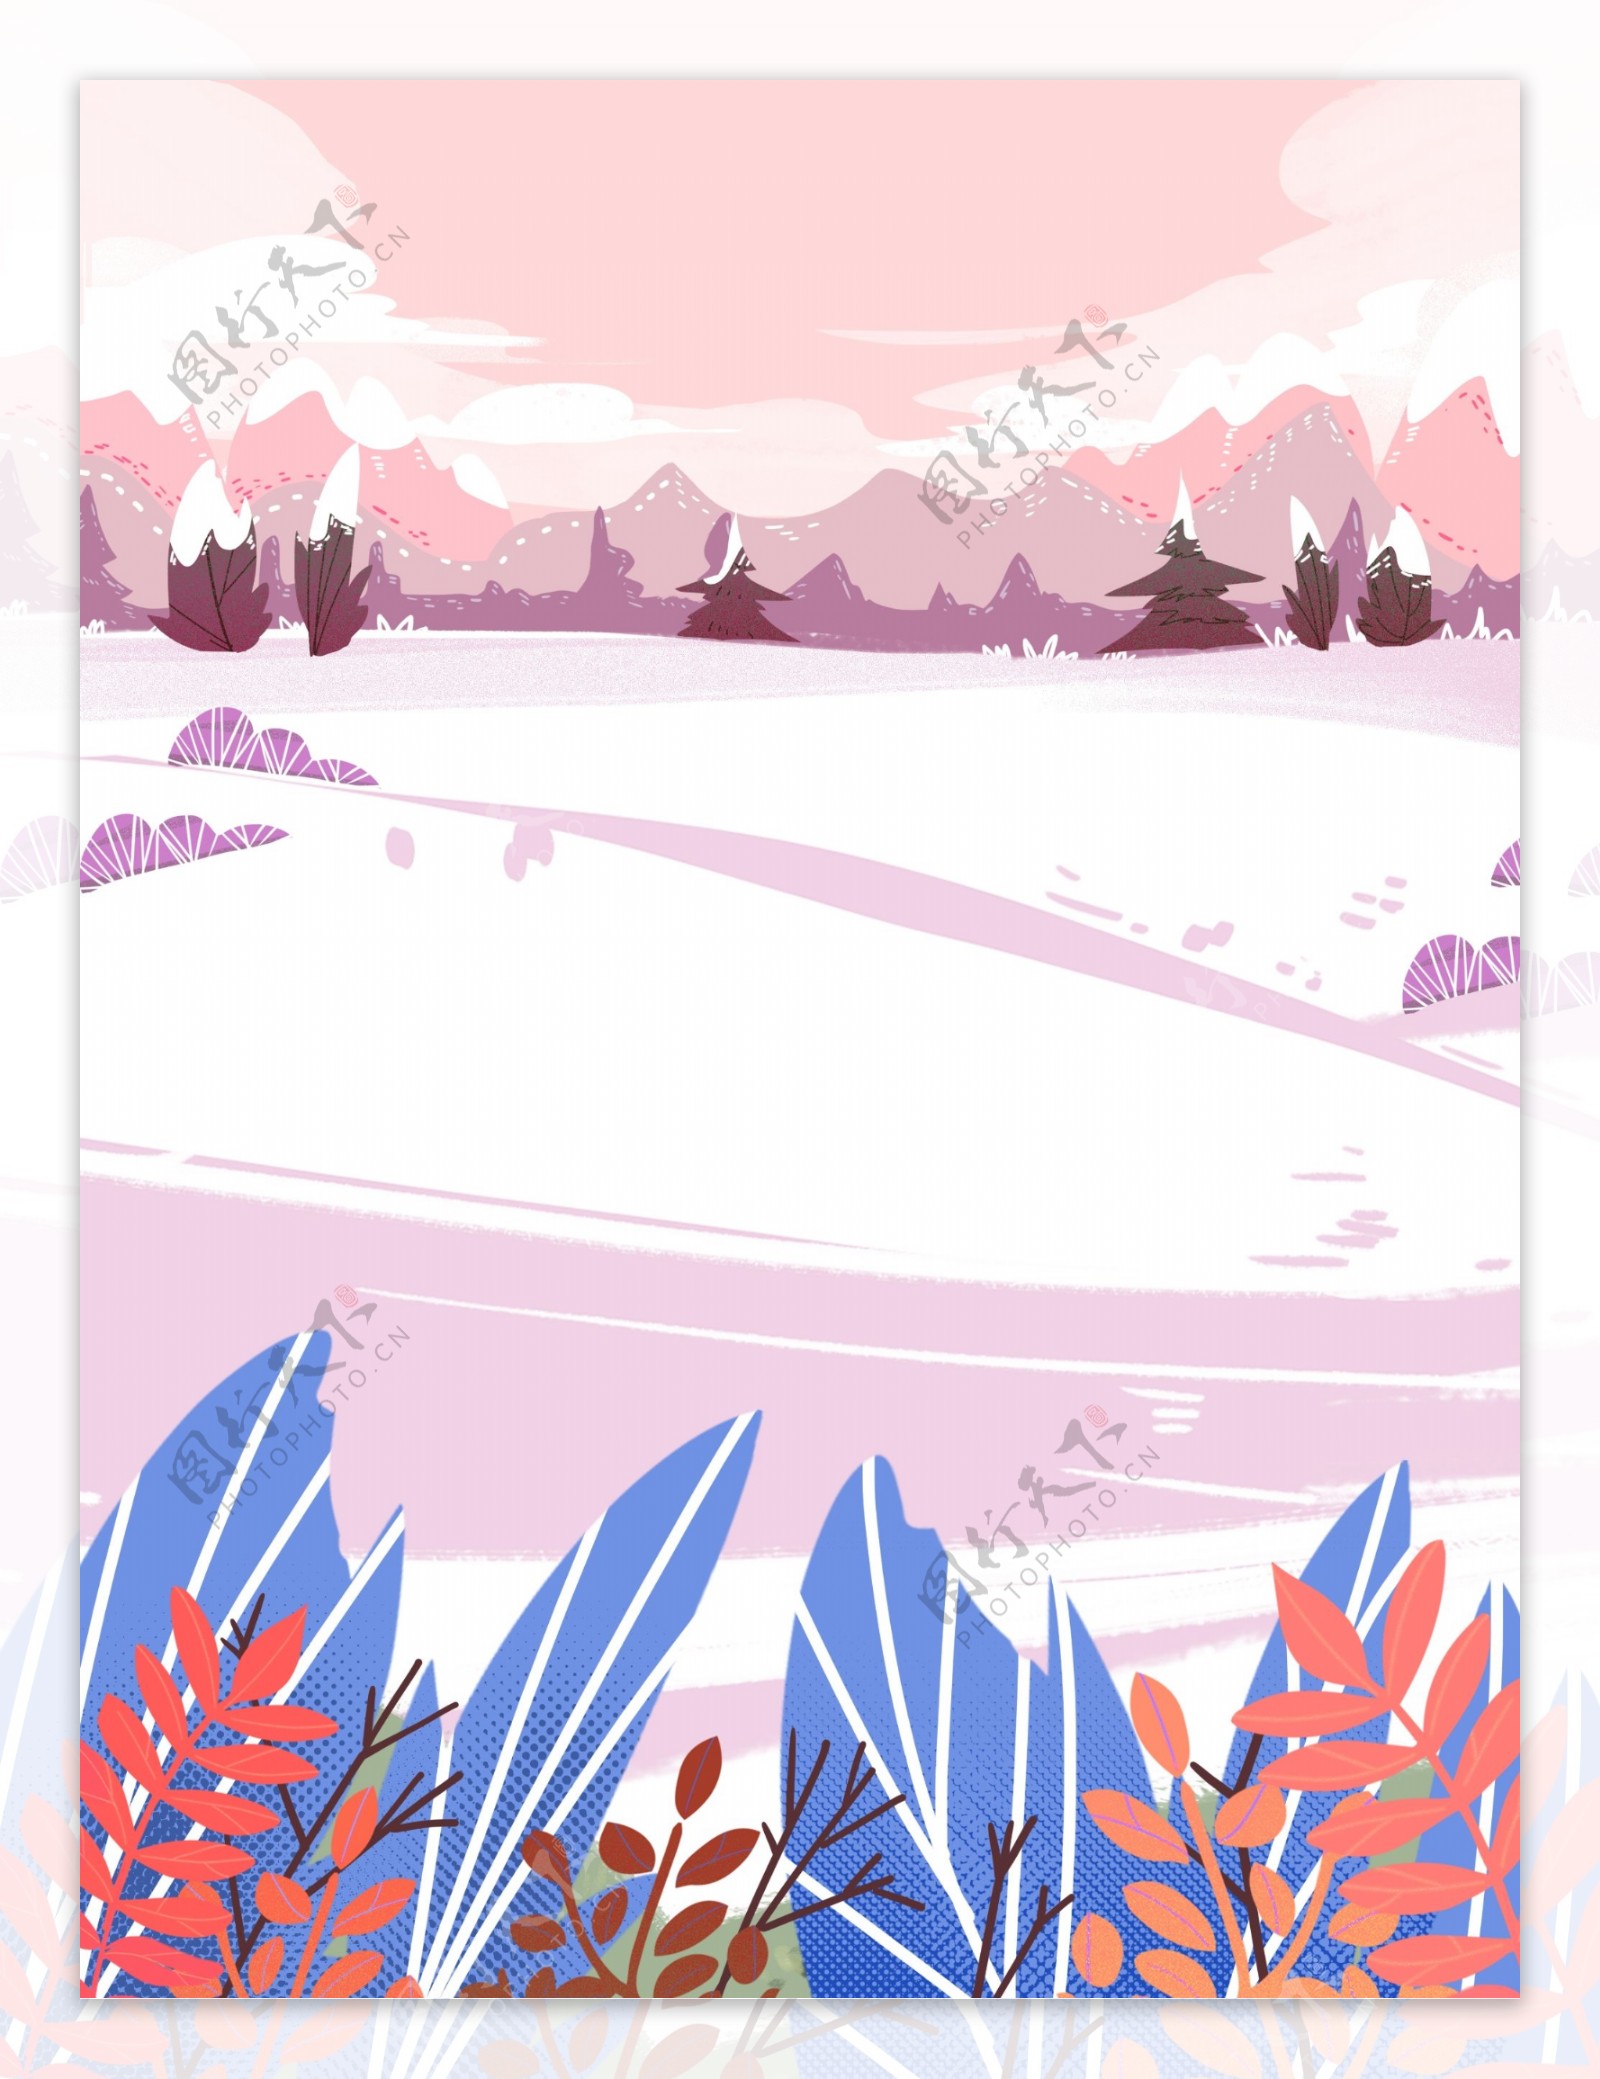 手绘冬季雪地花丛背景设计